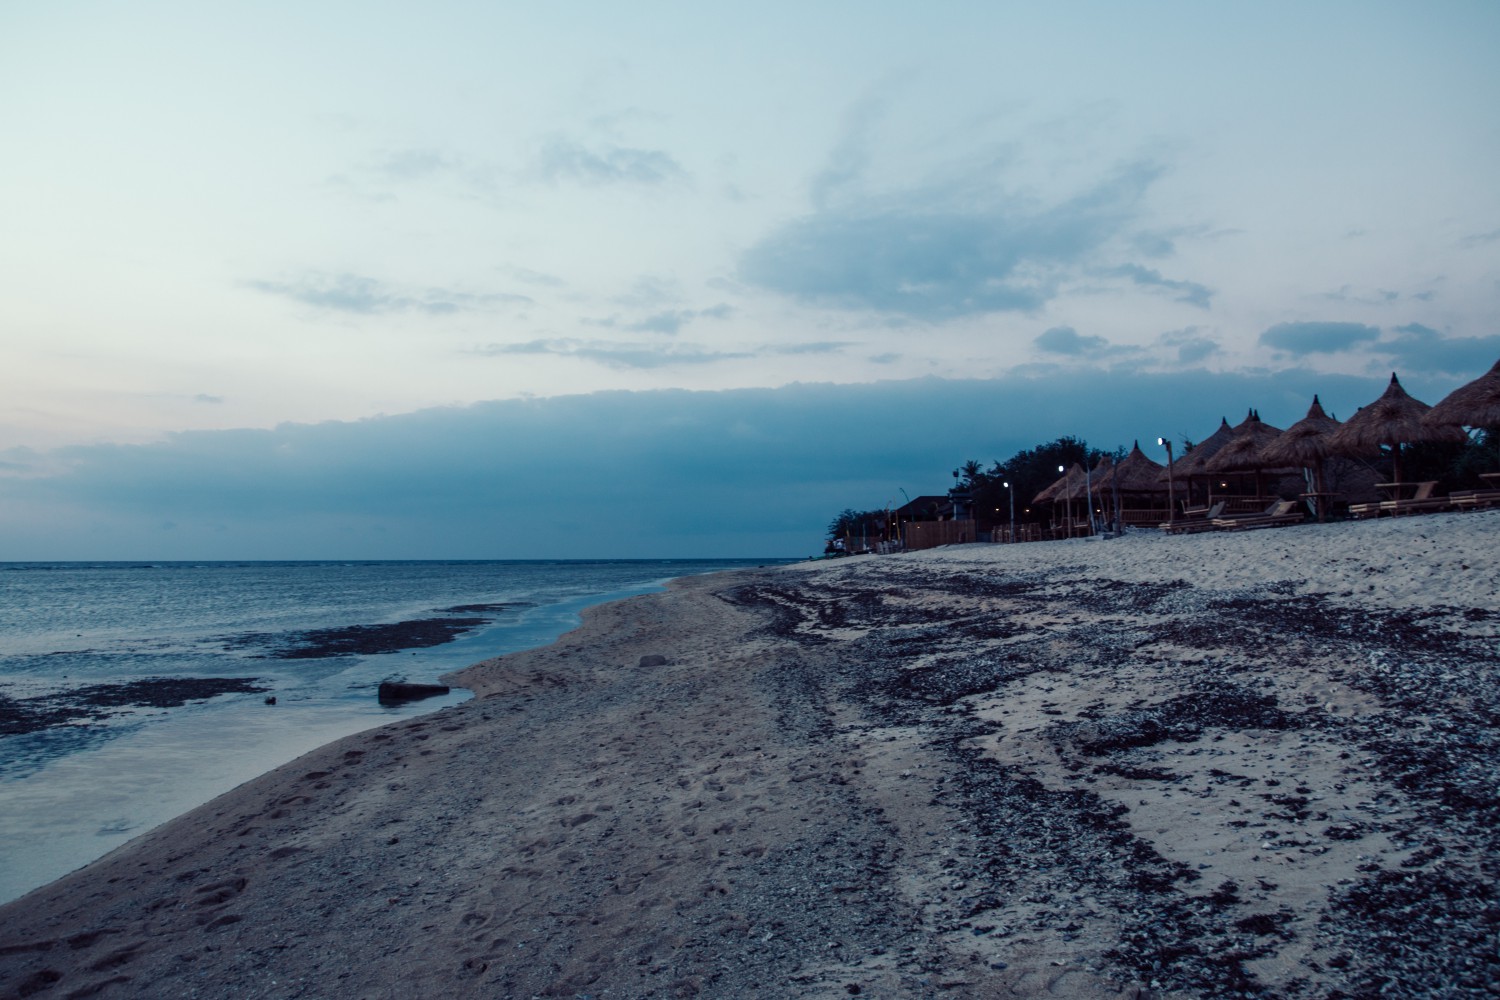 Strand im Dämmerlicht | Die blaue Stunde